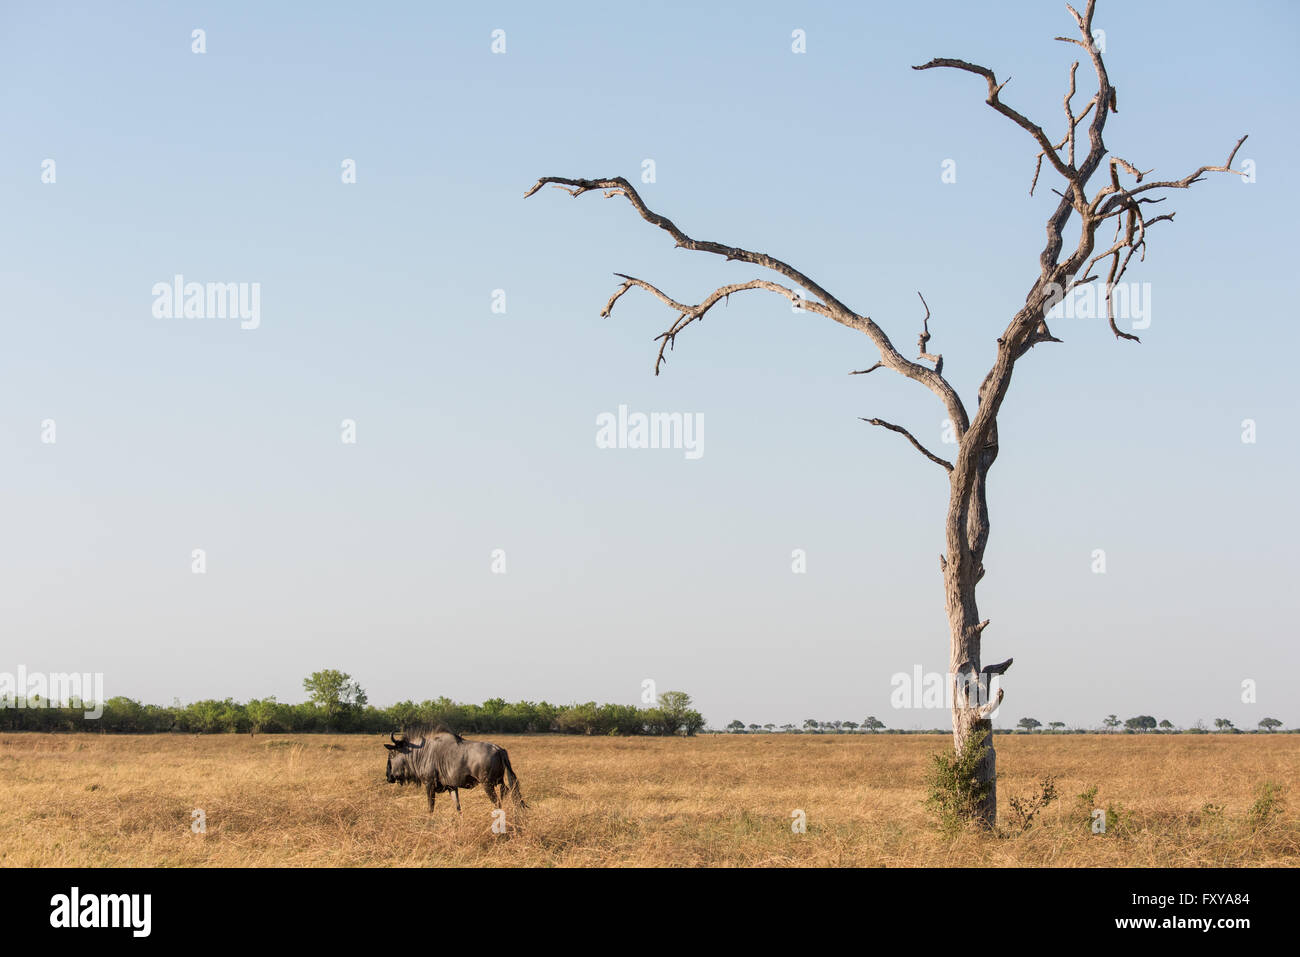 El ñu azul adulto de pie solo en Savuti Marsh pastizales secos, Botswana, 2015 Foto de stock